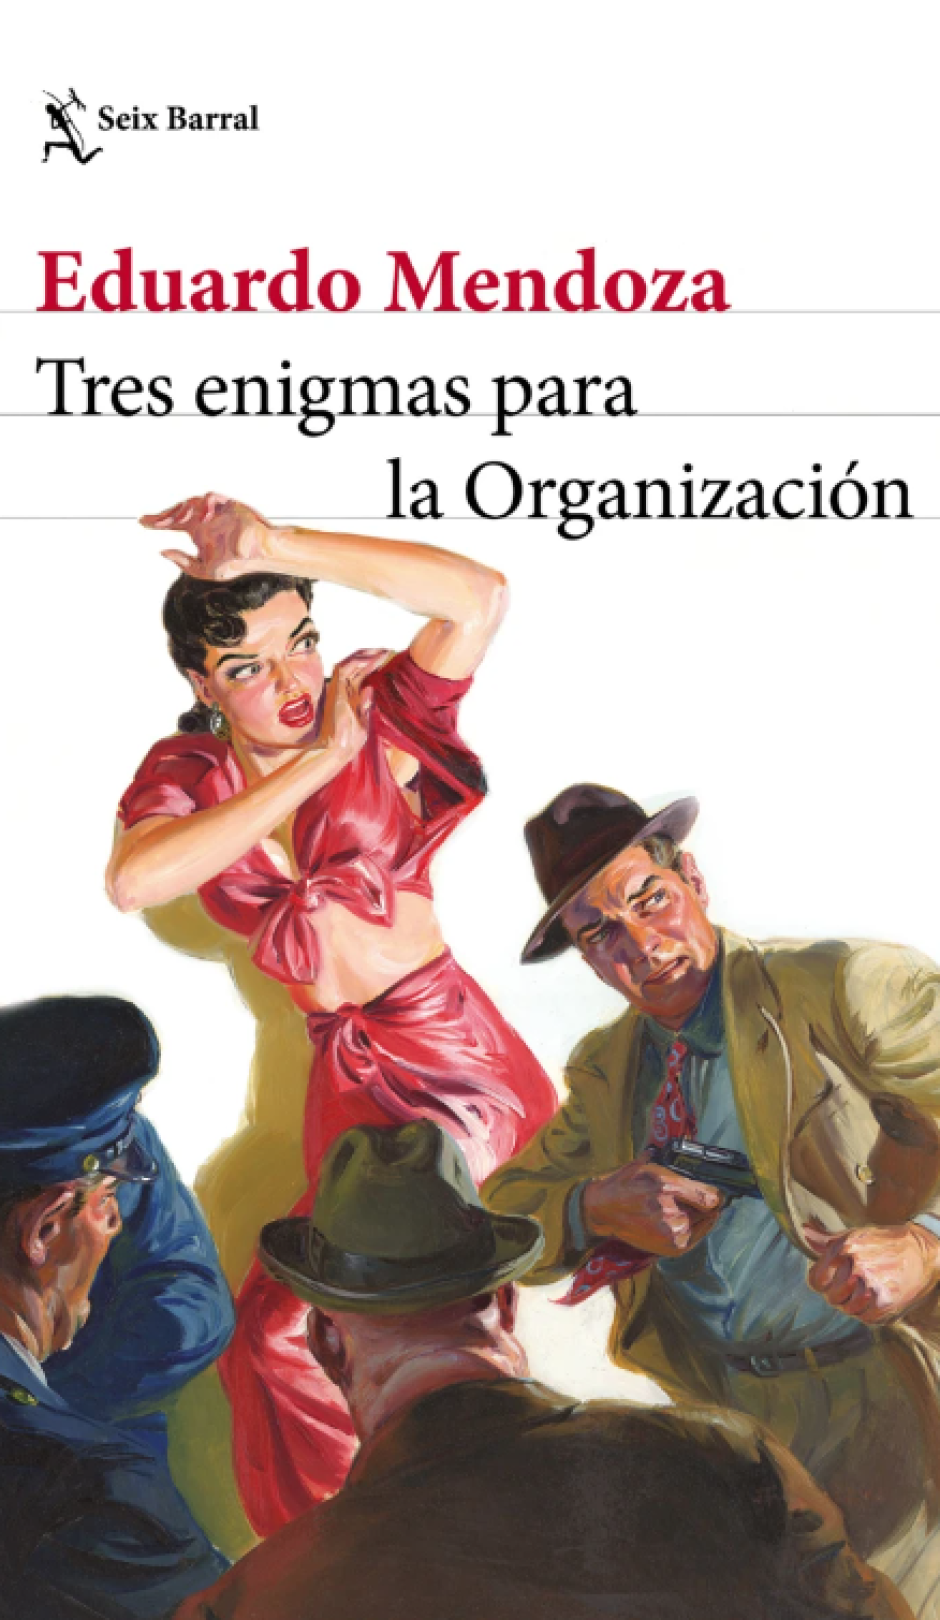 Portada de 'Tres enigmas para la Organización, nueva novela de Eduardo Mendoza